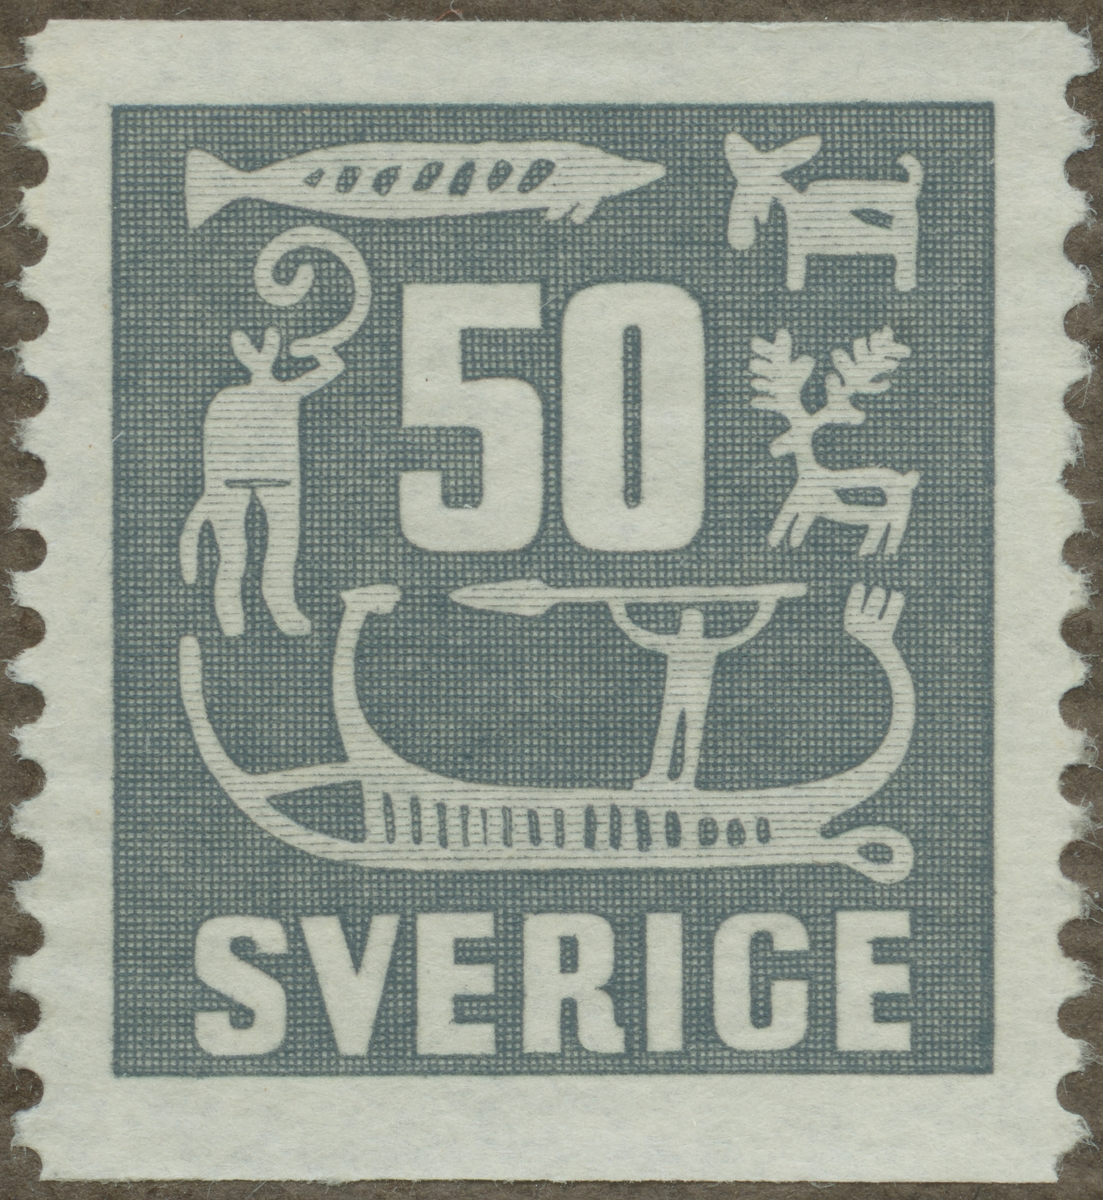 Frimärke ur Gösta Bodmans filatelistiska motivsamling, påbörjad 1950.
Frimärke från Sverige, 1954. Motiv av skepp Svensk hällristning